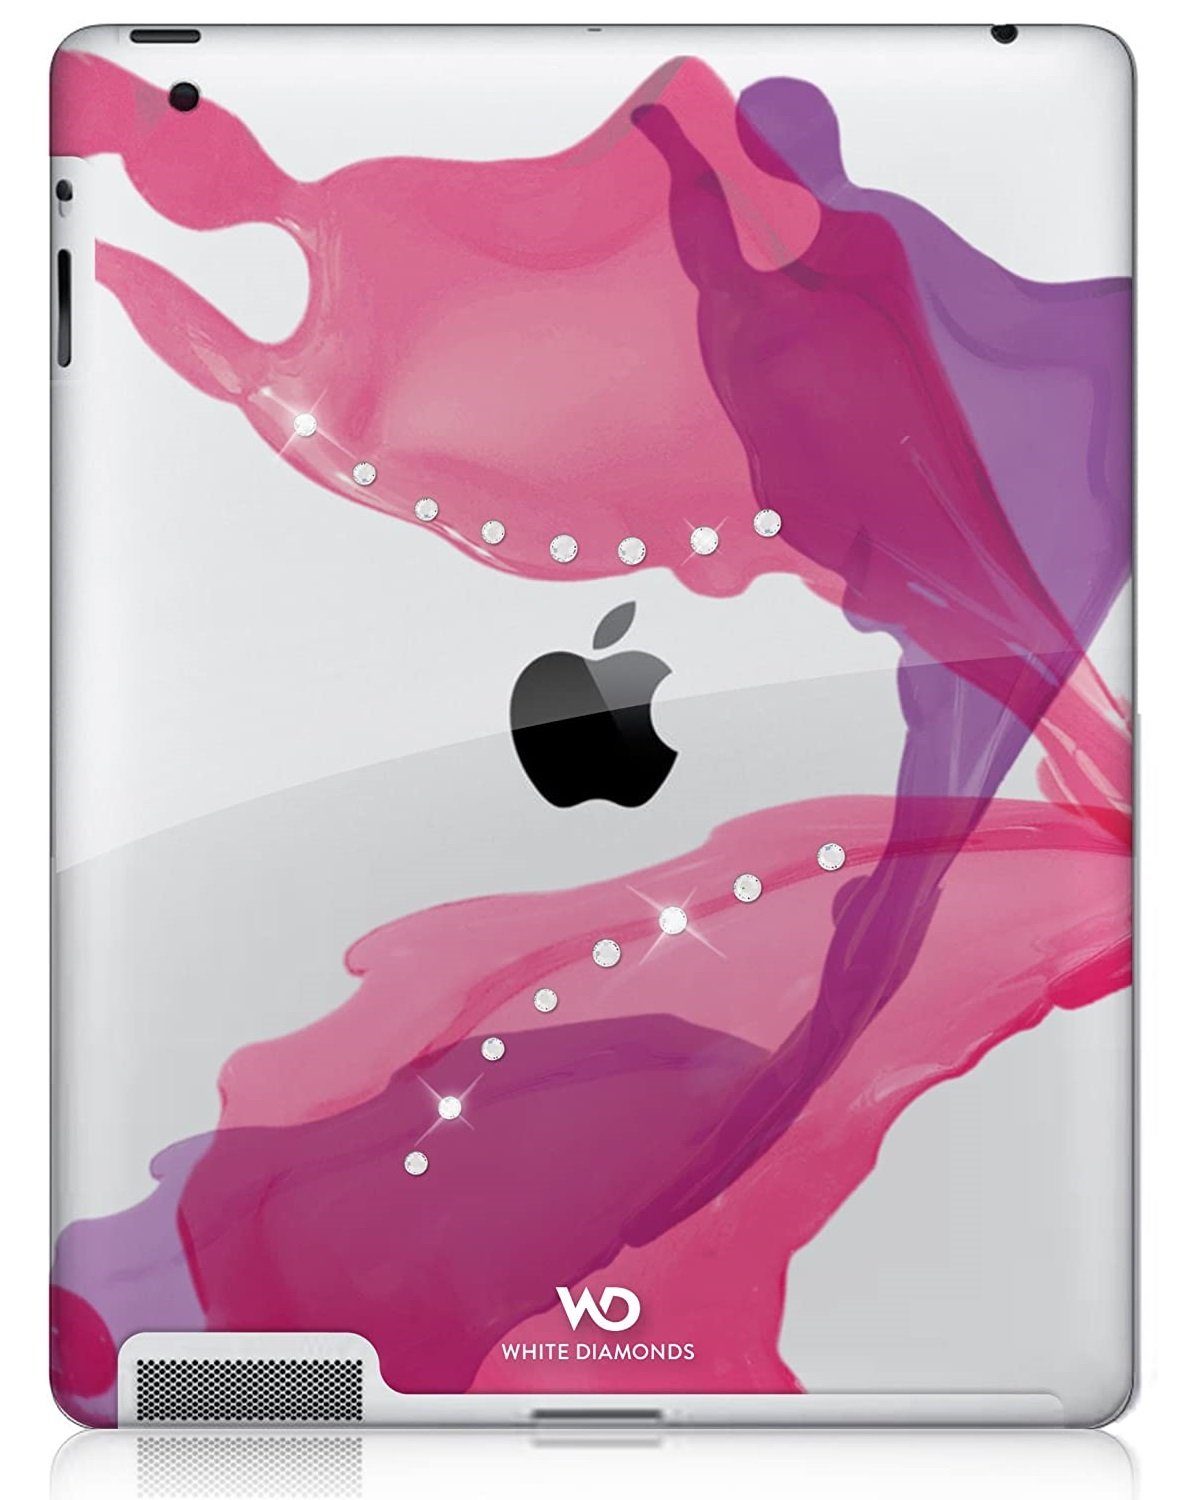 White Diamonds Tablet-Hülle Cover mit SWAROVSKI Elements Hülle Case, Tasche  passend für Apple iPad 4 3 2 4G 3G 2G, Design-Motiv verziert mit Swarovski  Steinen, Zugriff auf alle Funktionen